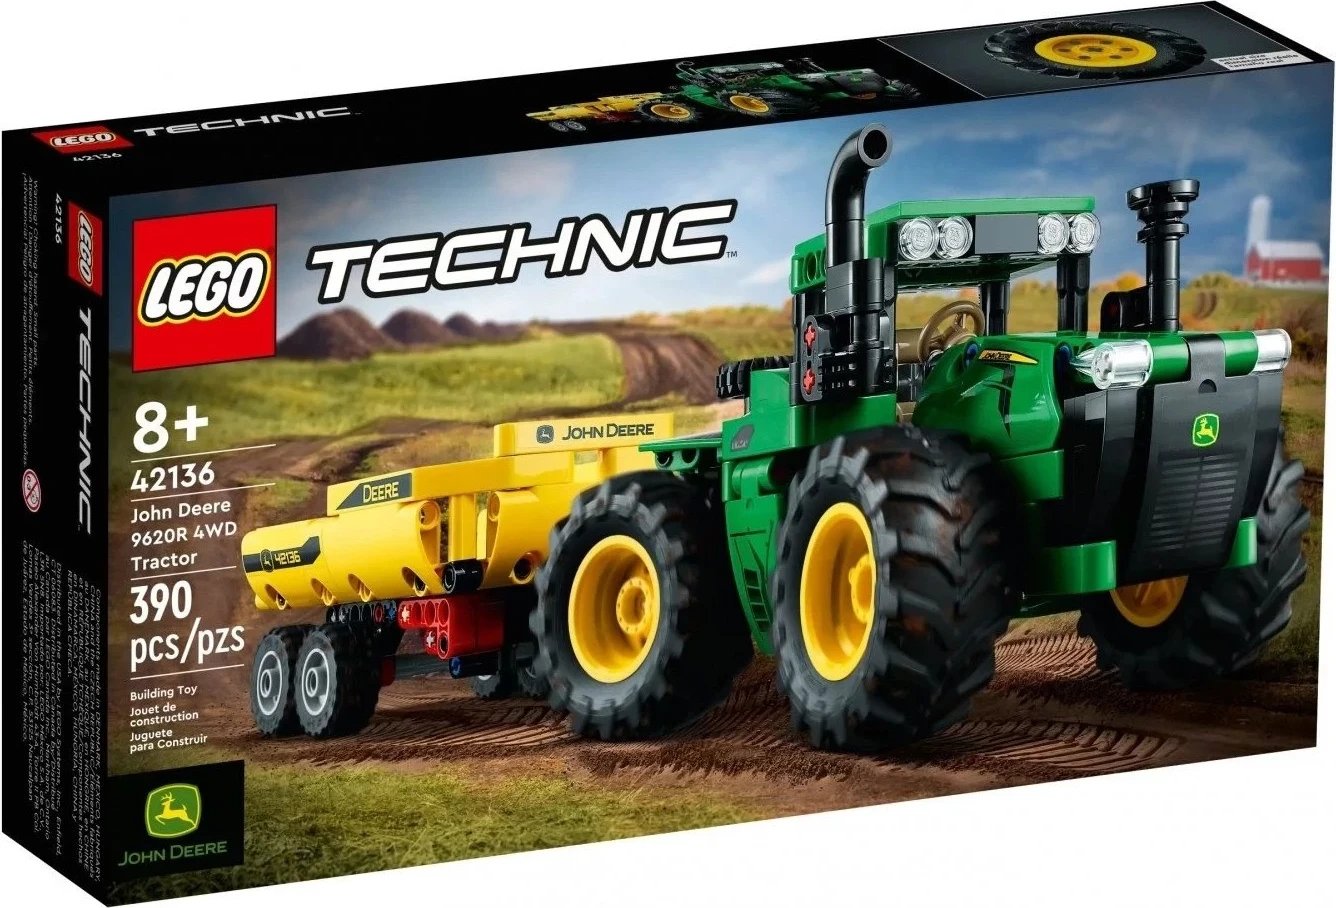 Lodër Lego Technic Traktor 42136